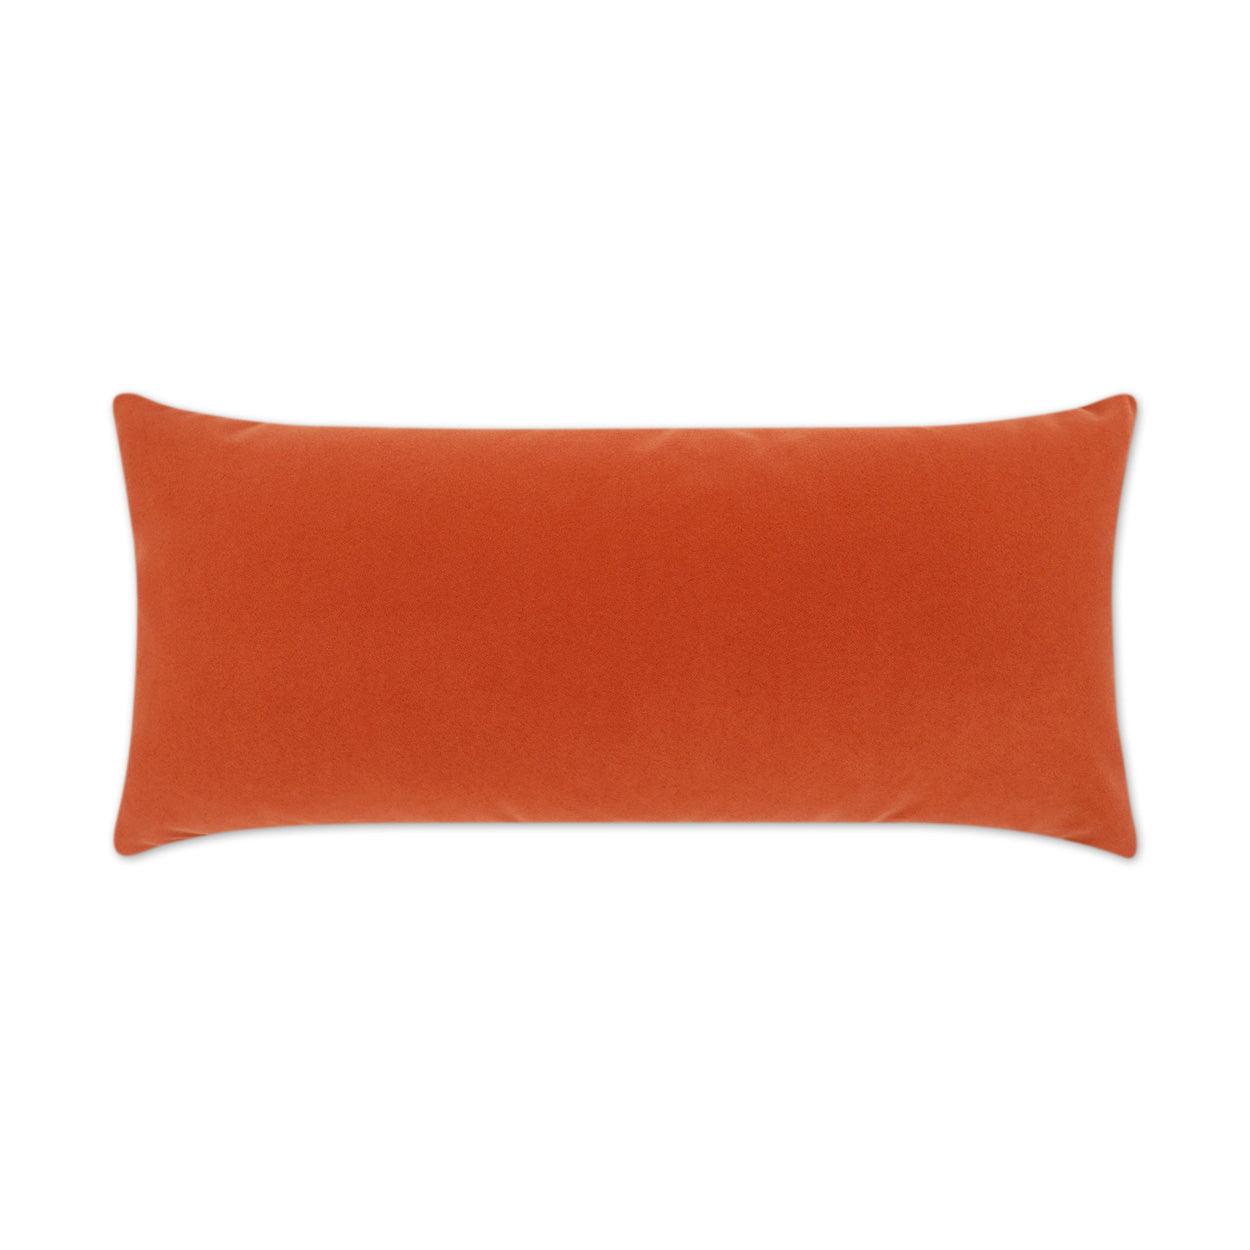 LOOMLAN Outdoor - Outdoor Sundance Duo Lumbar Pillow - Orange - Outdoor Pillows